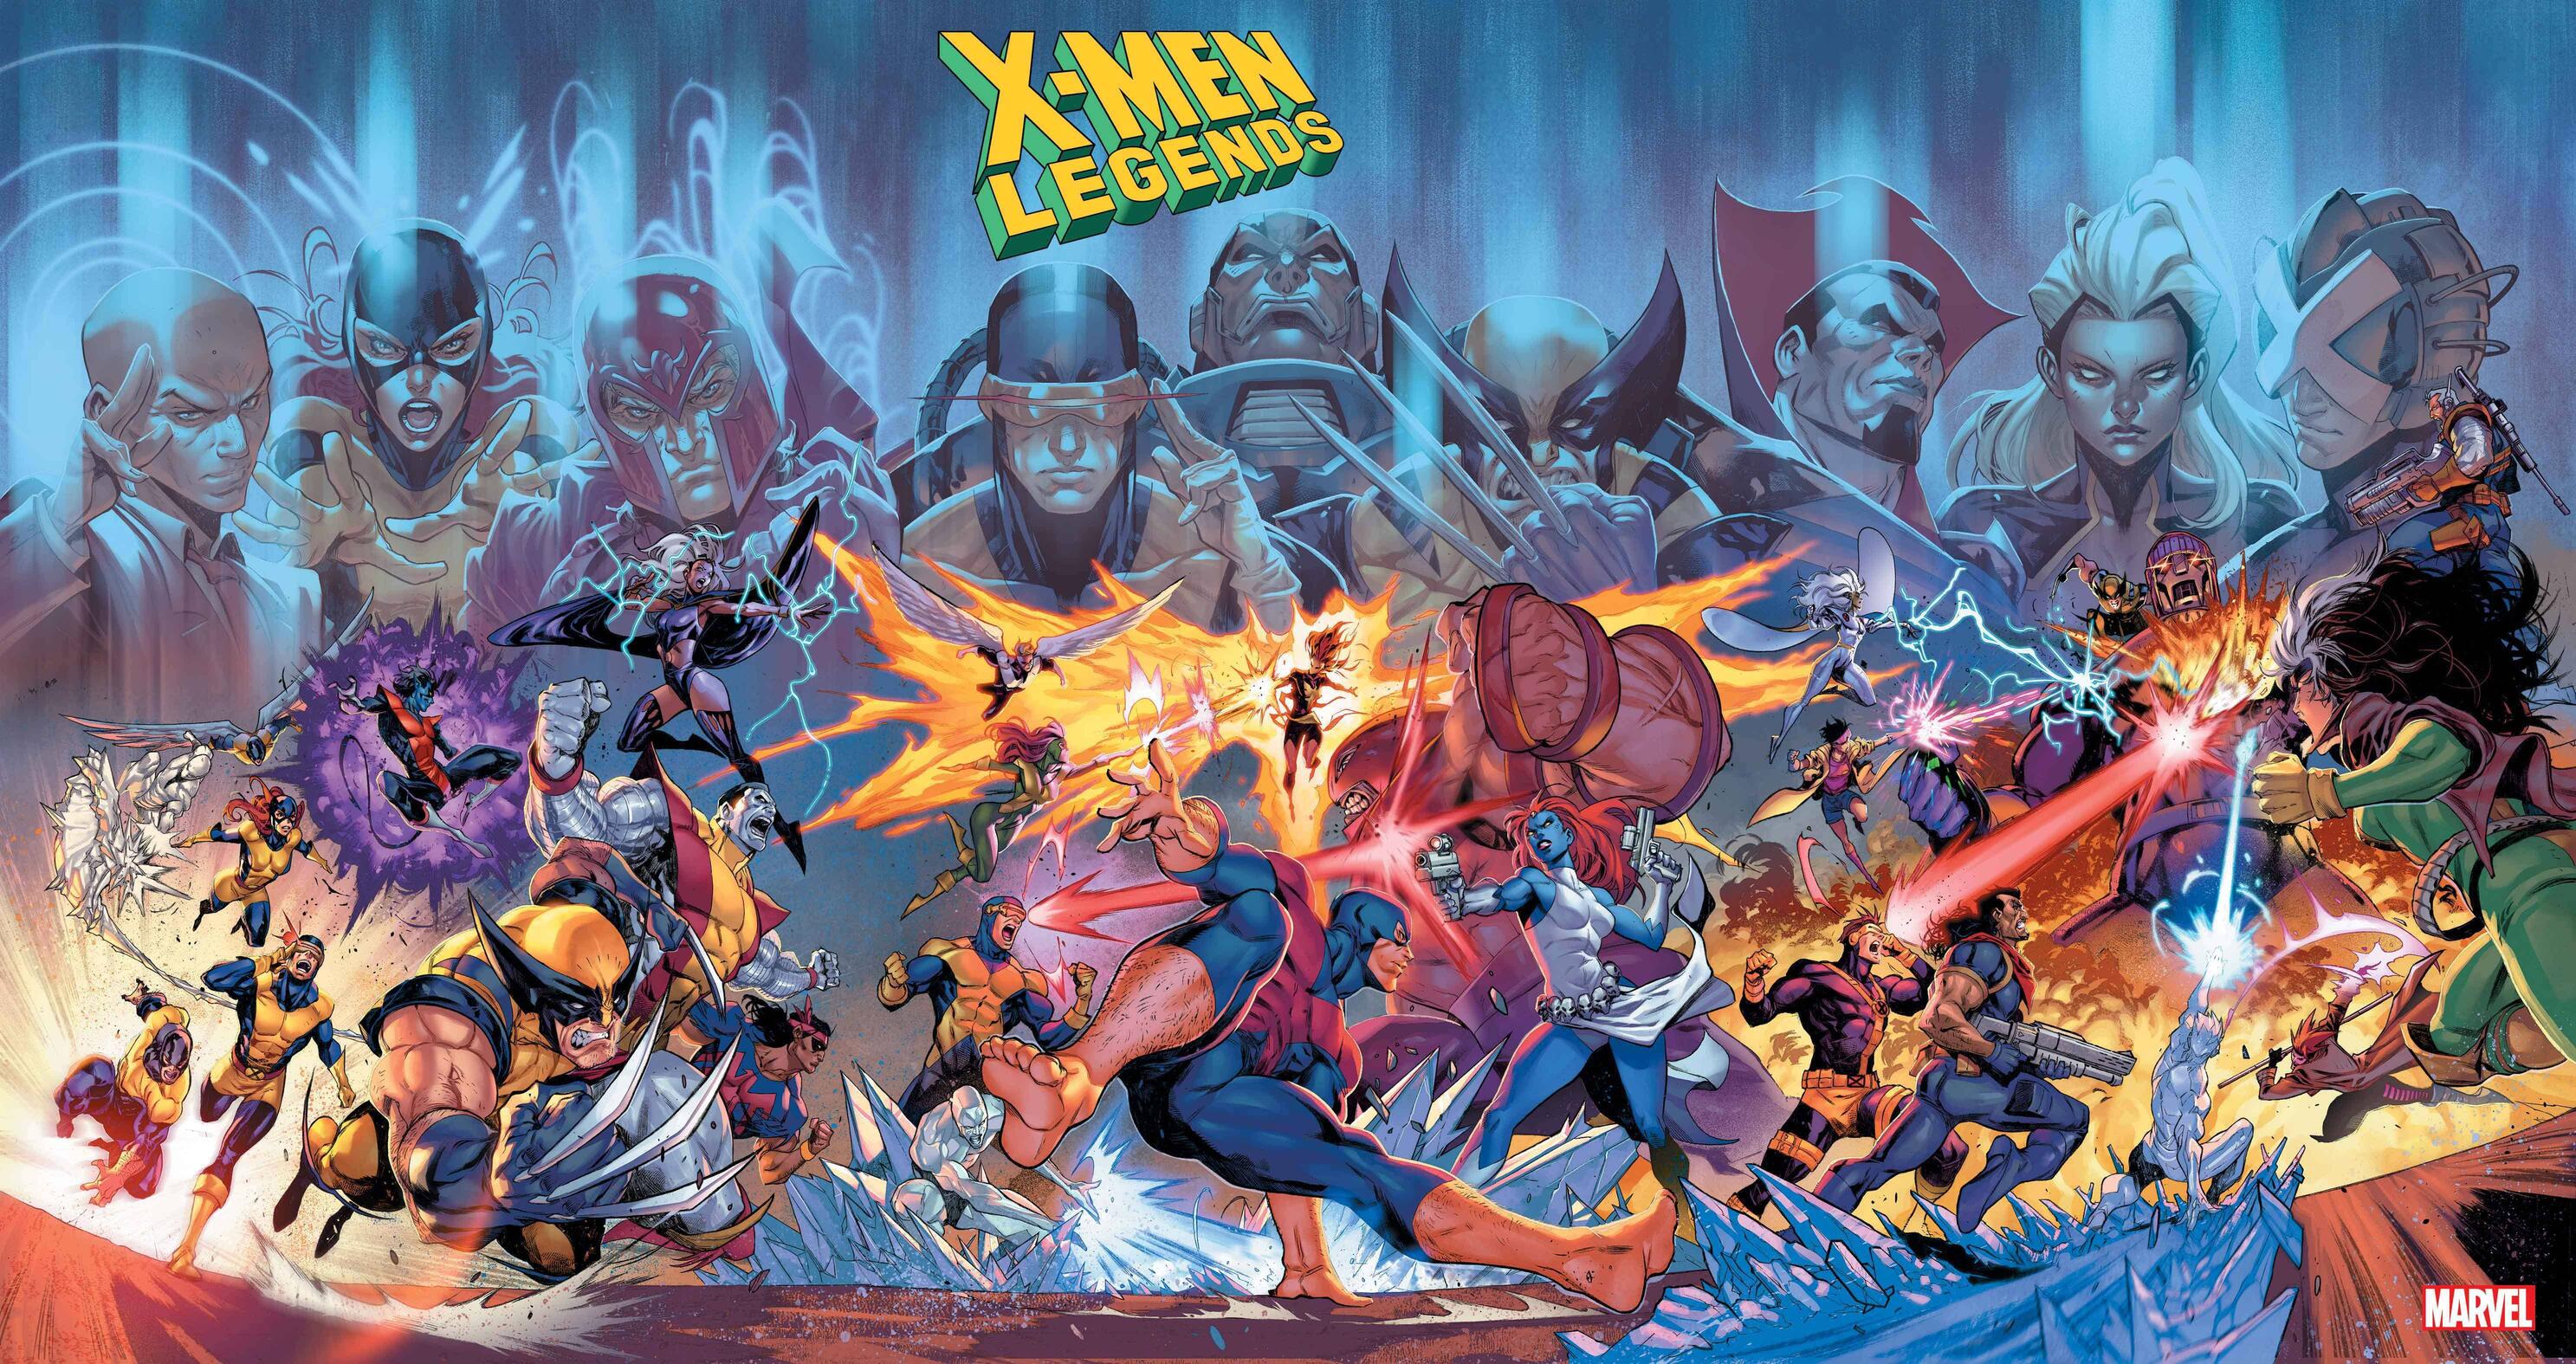 Bande-dessinées X-Men: Legends Fond d'écran HD | Image